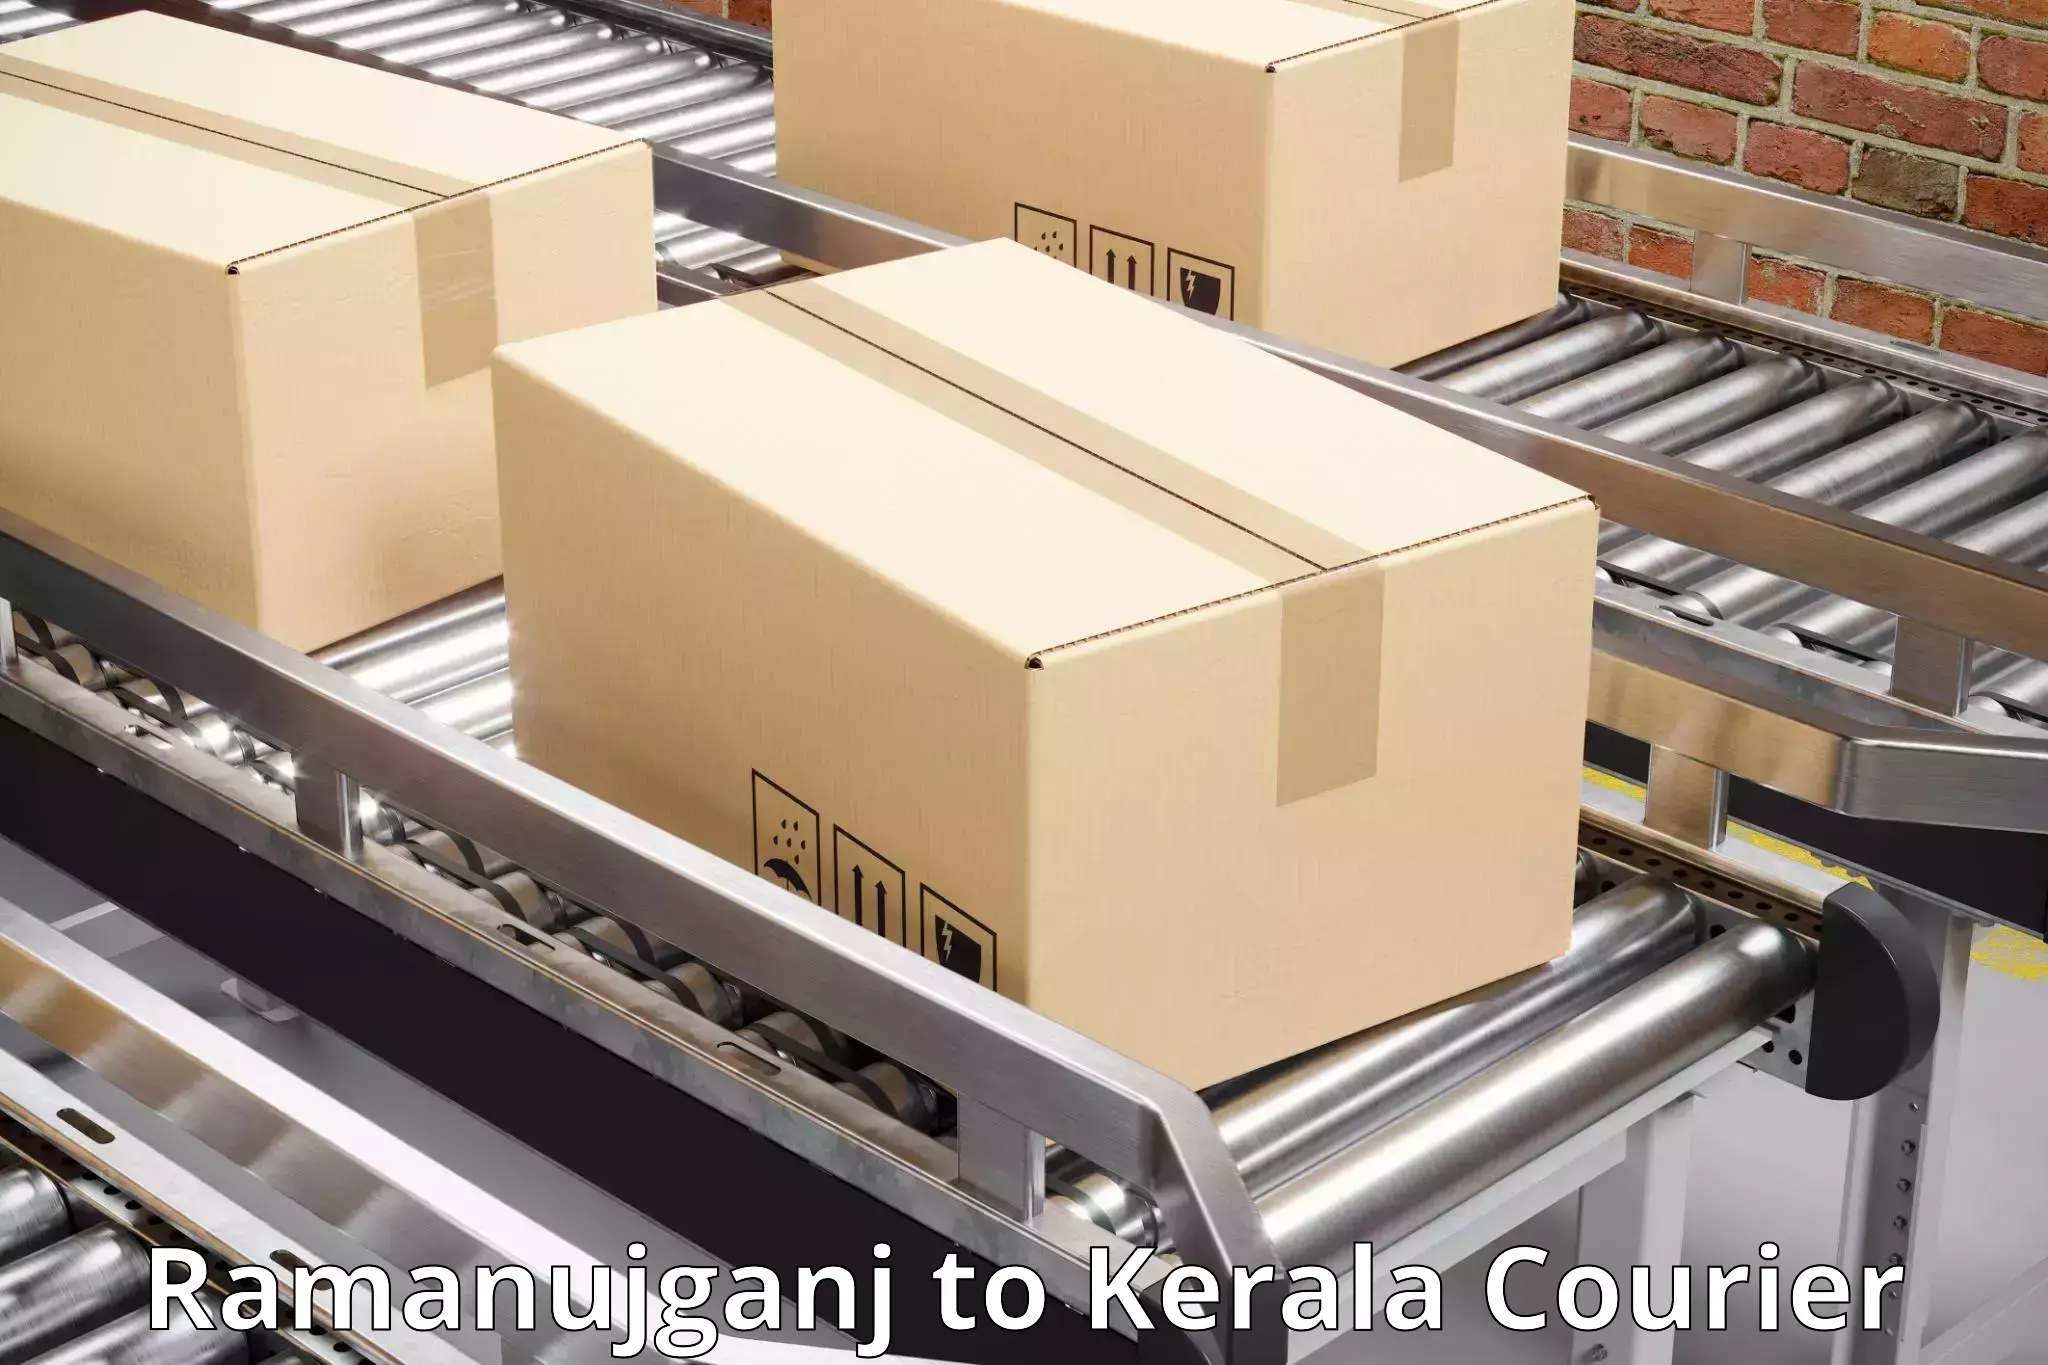 Customizable shipping options Ramanujganj to Kattappana